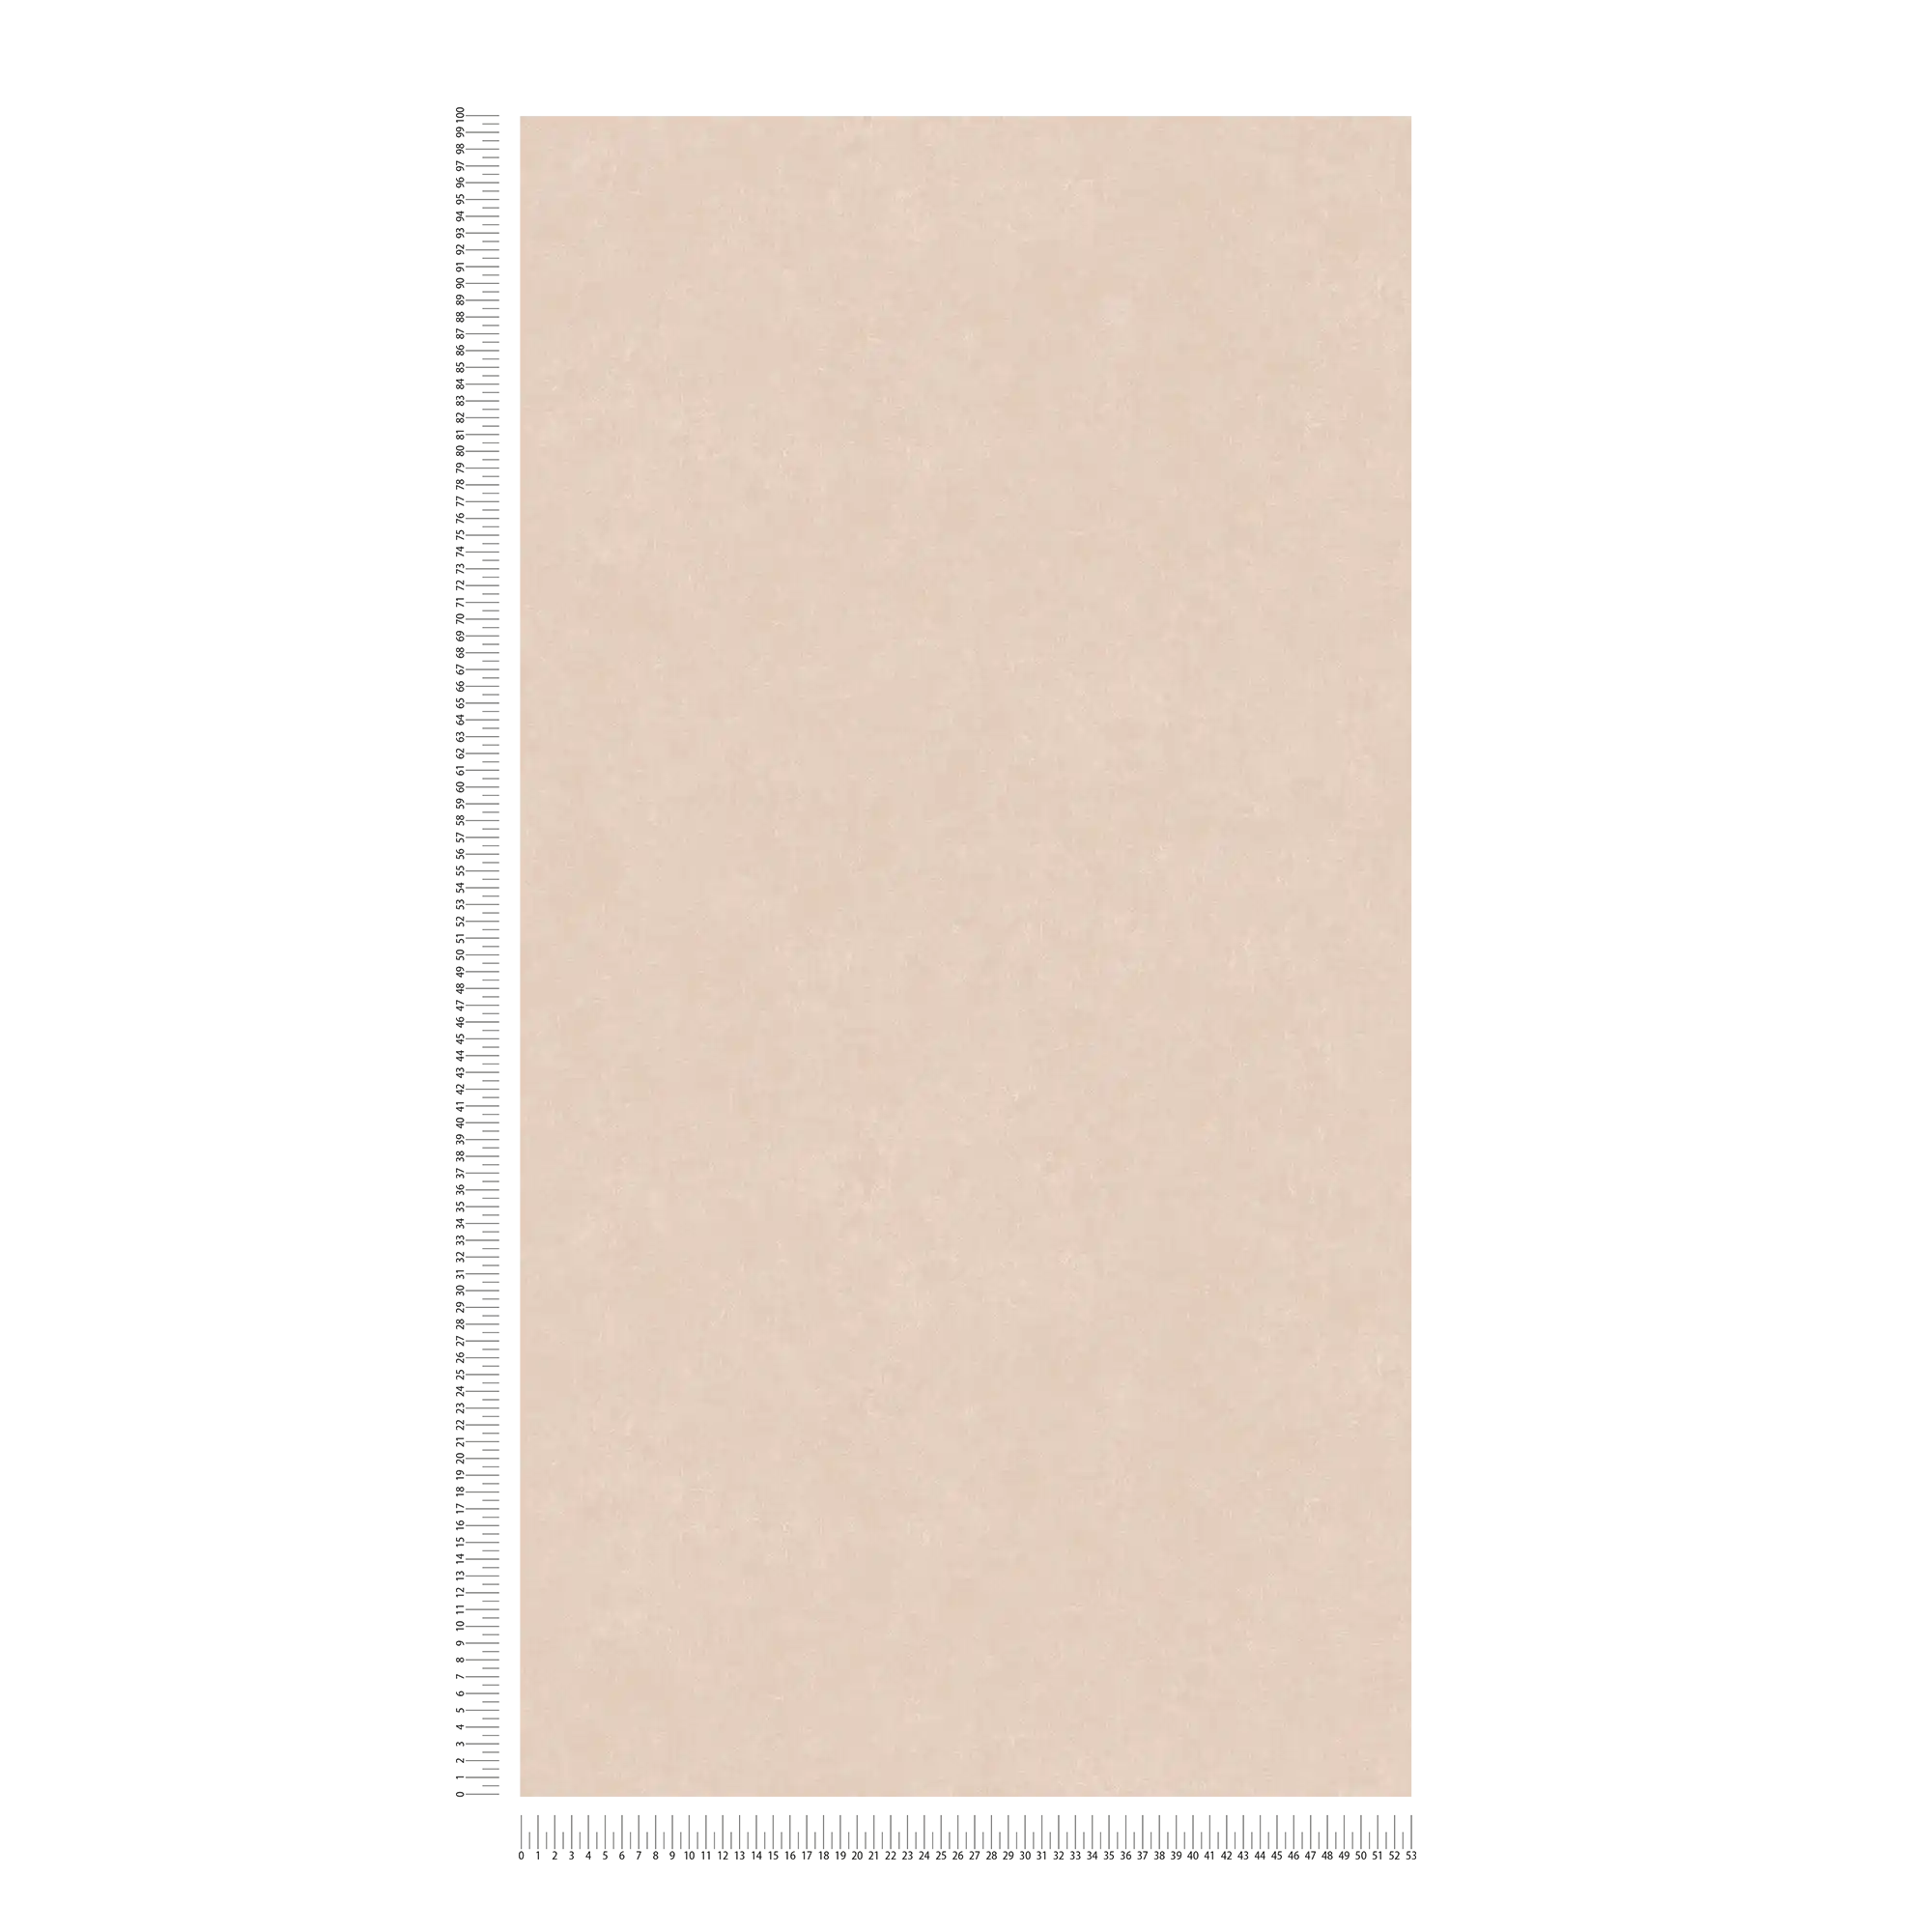             papel pintado texturizado beige-rosa con soporte no tejido - rosa
        